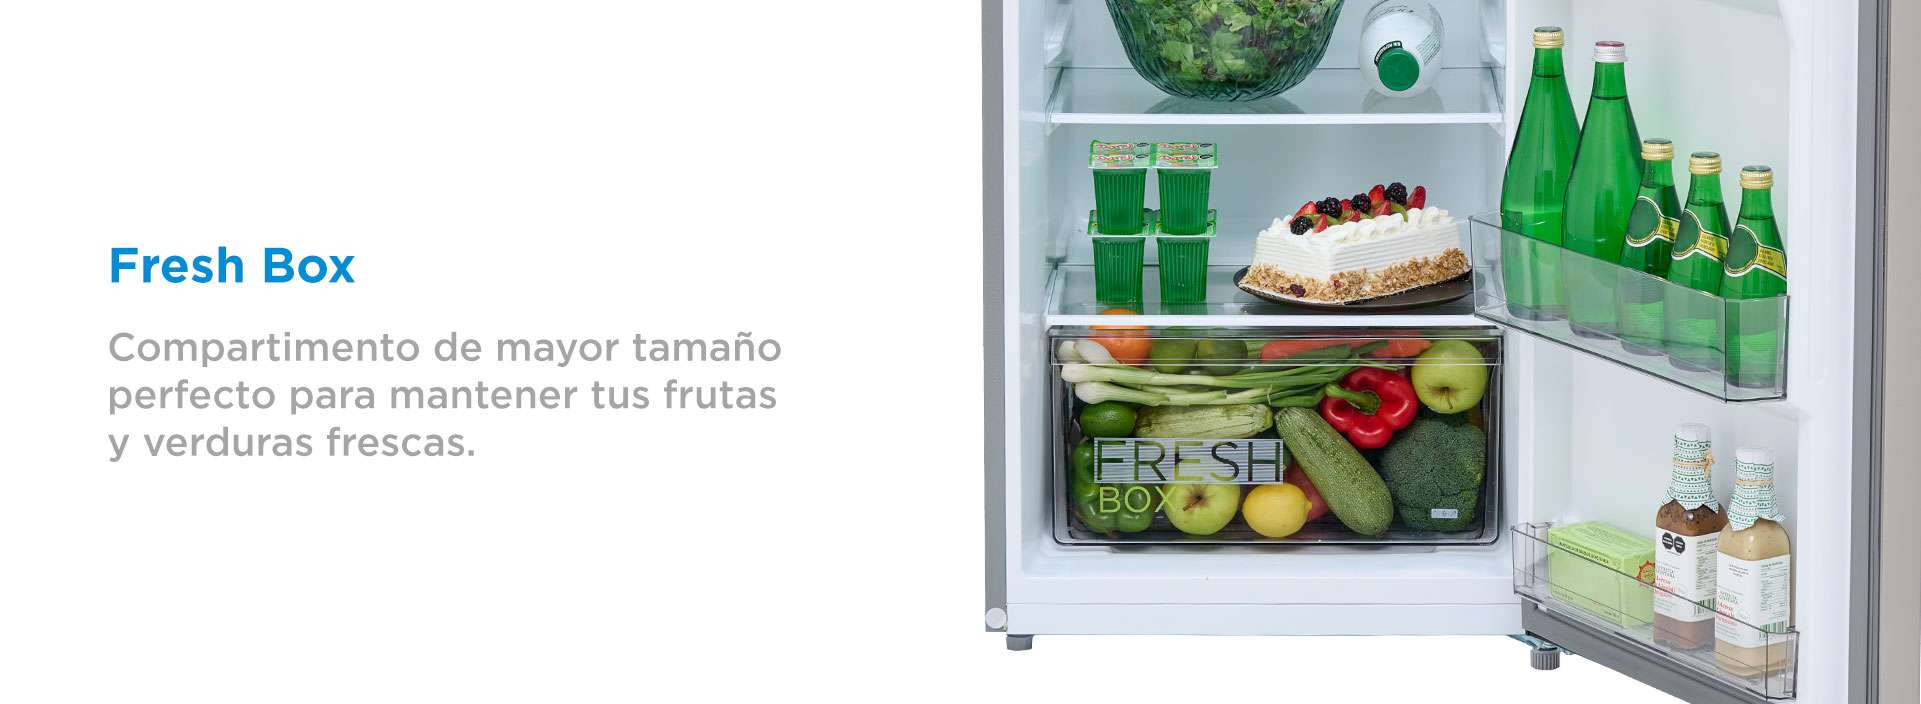 Refrigerador Automático Top Mount 10 Pies Cúbicos con Dispensador de agua /  280 L Bru Steel Smart Sensor